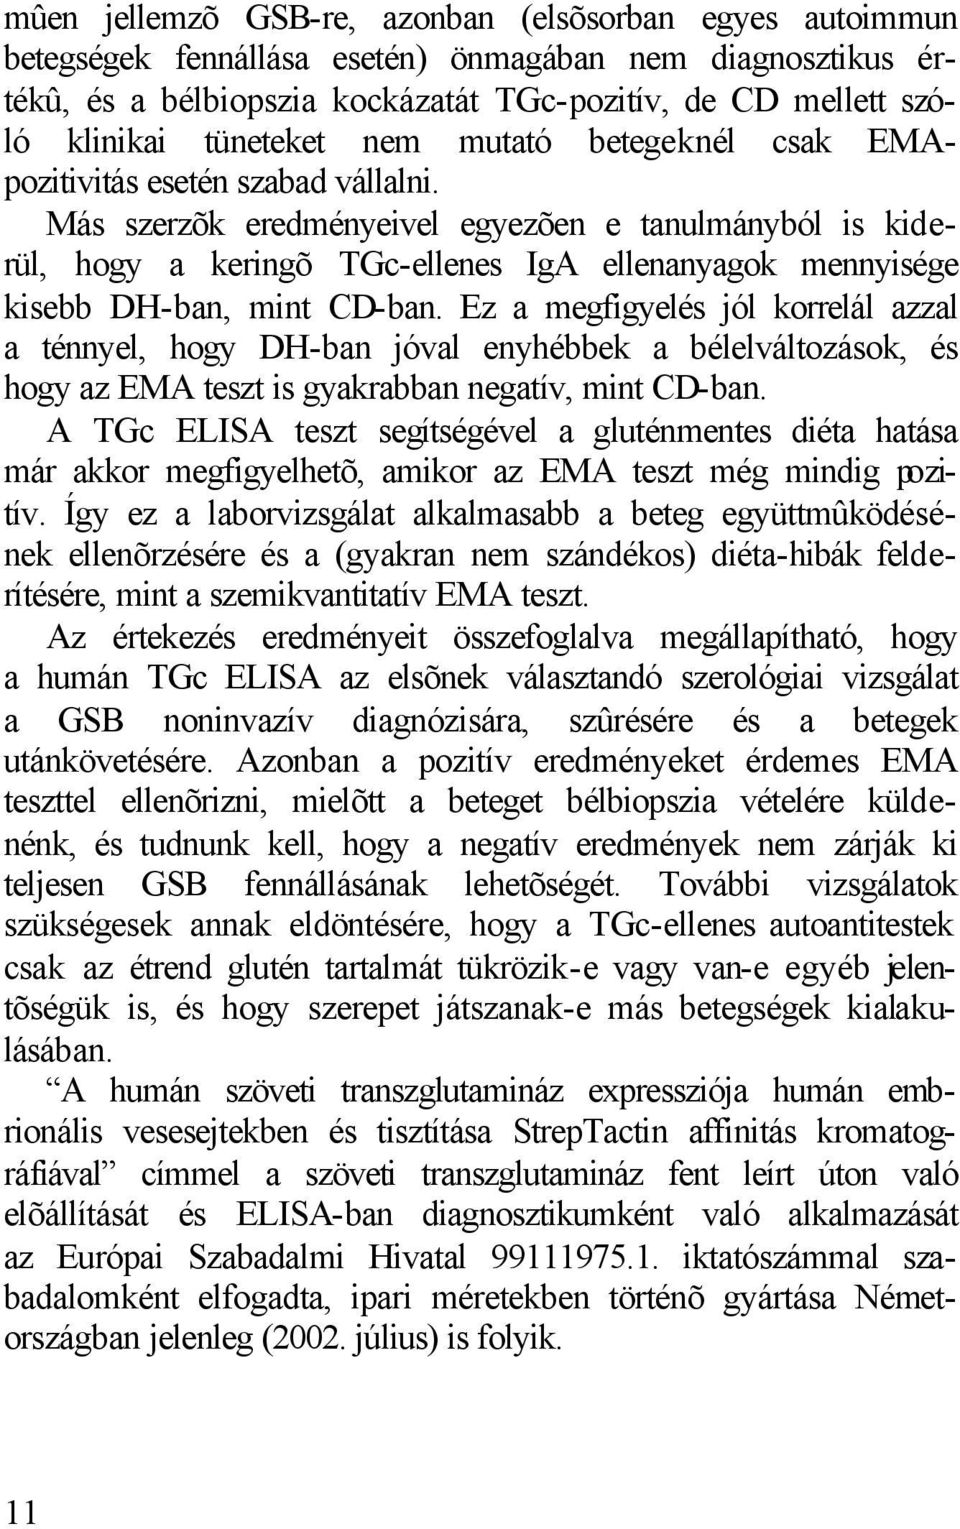 Más szerzõk eredményeivel egyezõen e tanulmányból is kiderül, hogy a keringõ TGc-ellenes IgA ellenanyagok mennyisége kisebb DH-ban, mint CD-ban.